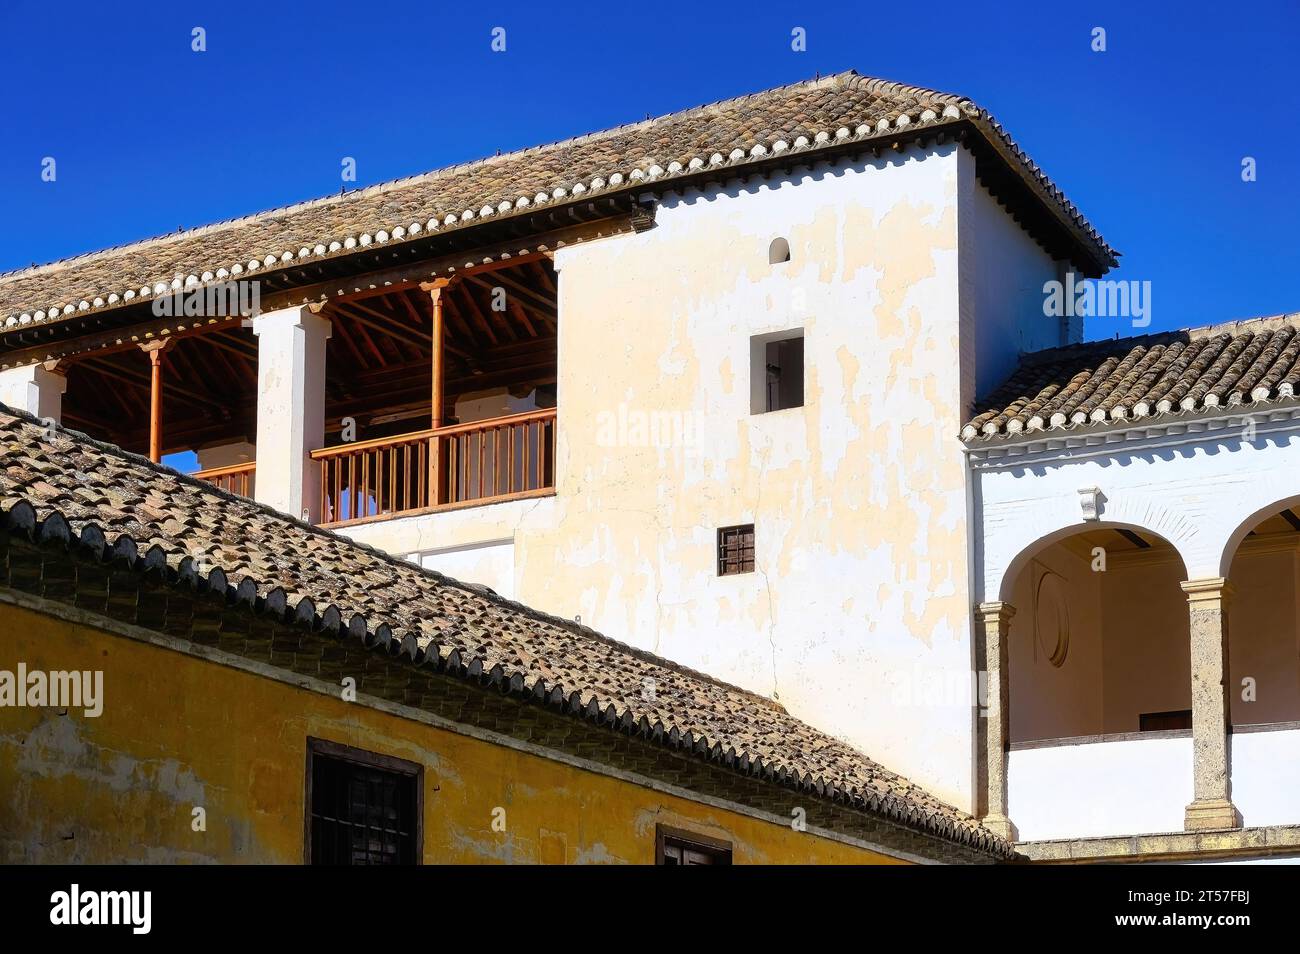 Granada, Spagna, archi e tetto piastrellato in argilla parte del palazzo all'interno del complesso dell'Alhambra. Caratteristica architettonica islamica medievale del monumento nazionale. Foto Stock